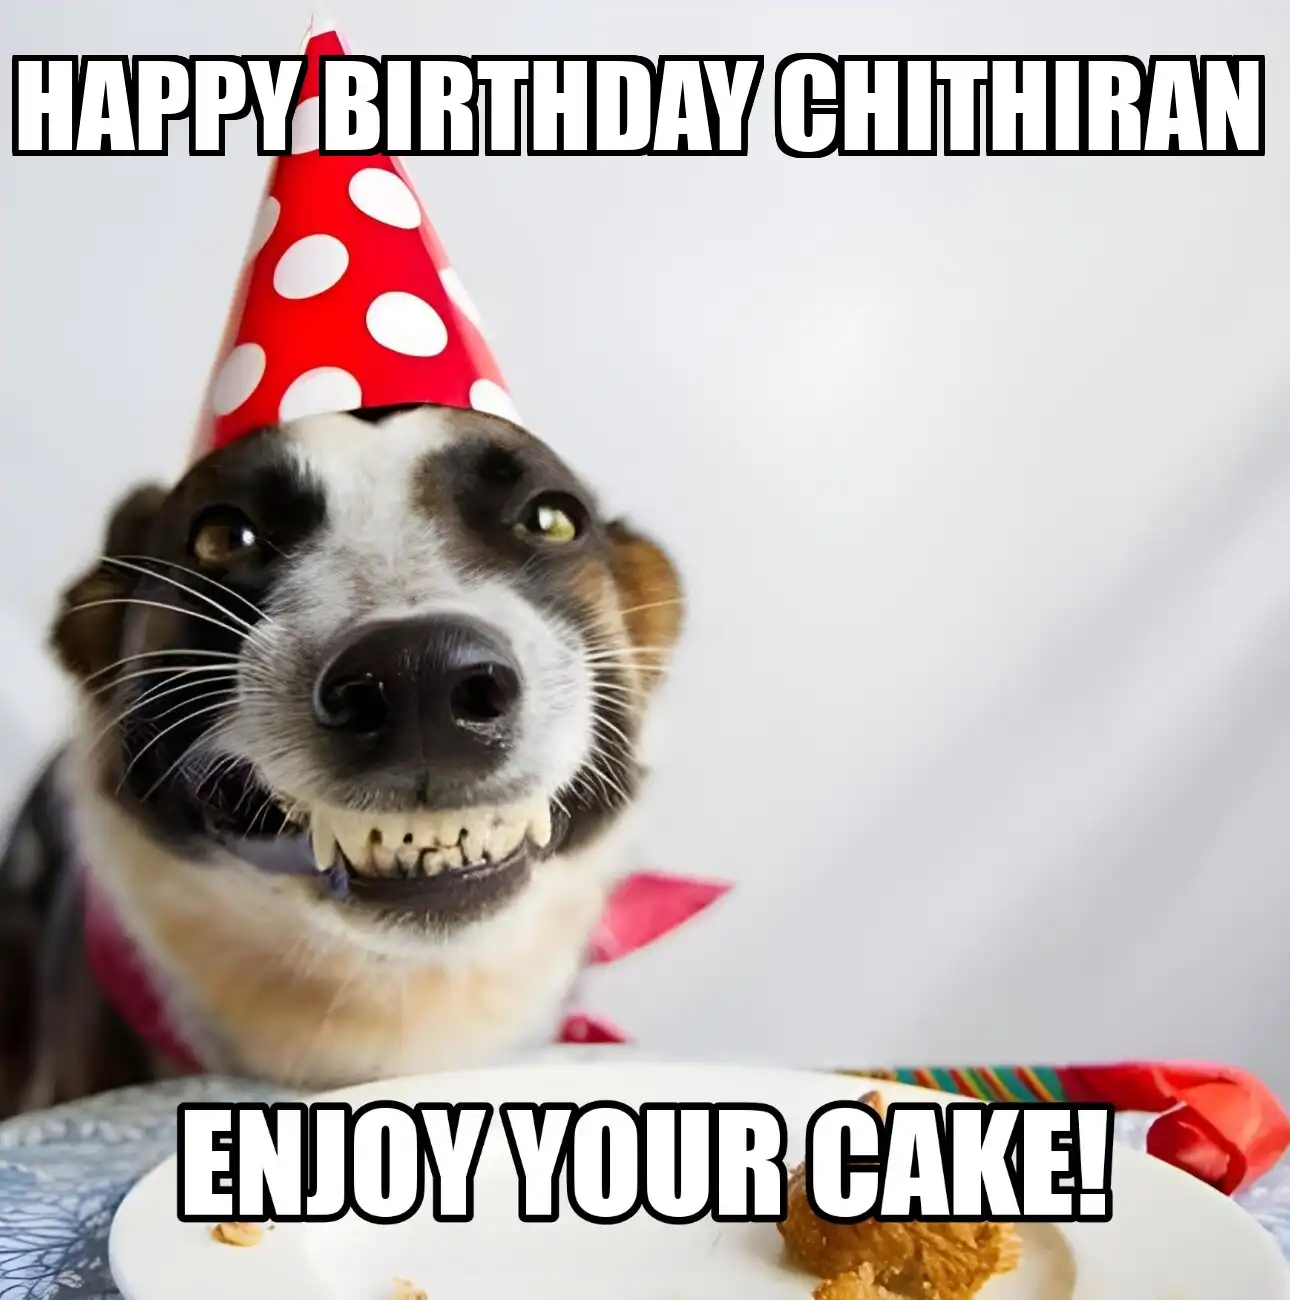 Happy Birthday Chithiran Enjoy Your Cake Dog Meme